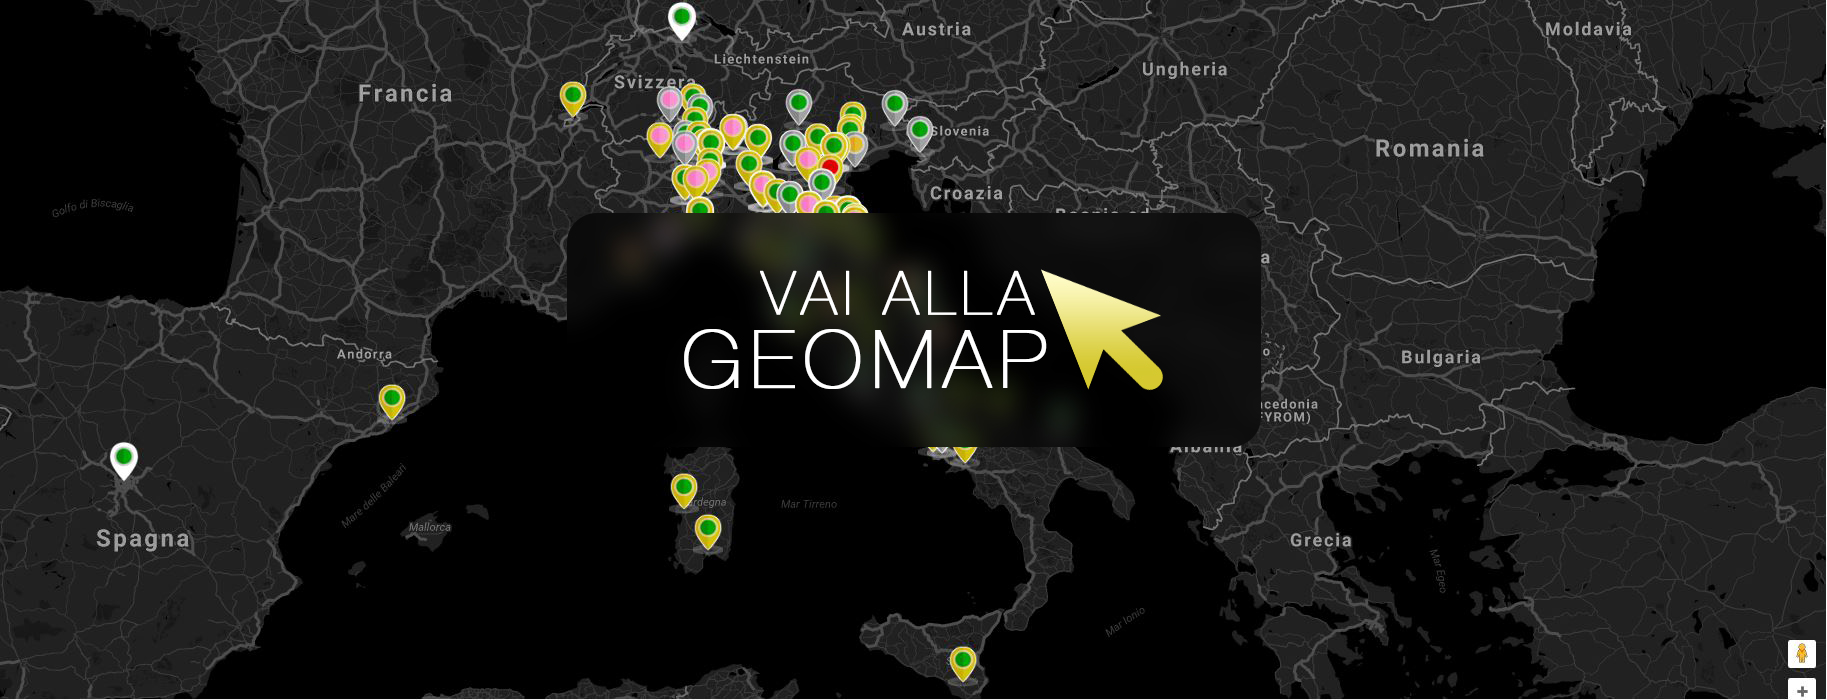 Guarda gli annunci a Villapiana nella mappa intervattiva